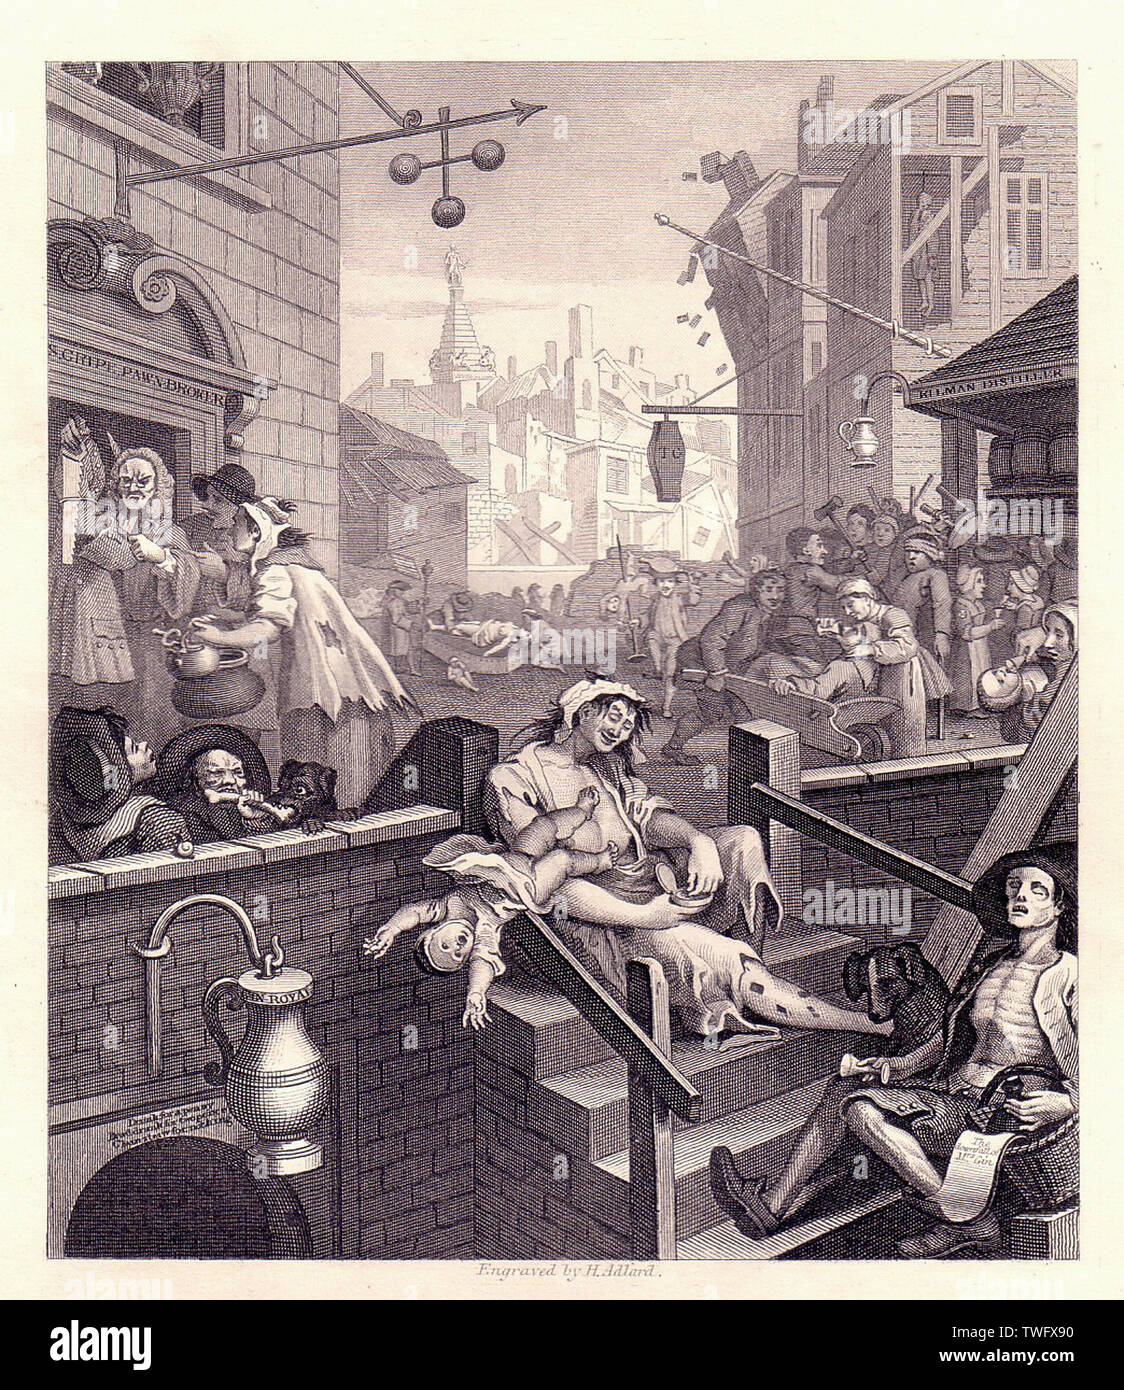 William Hogarth - Gin Lane 1751 Stock Photo